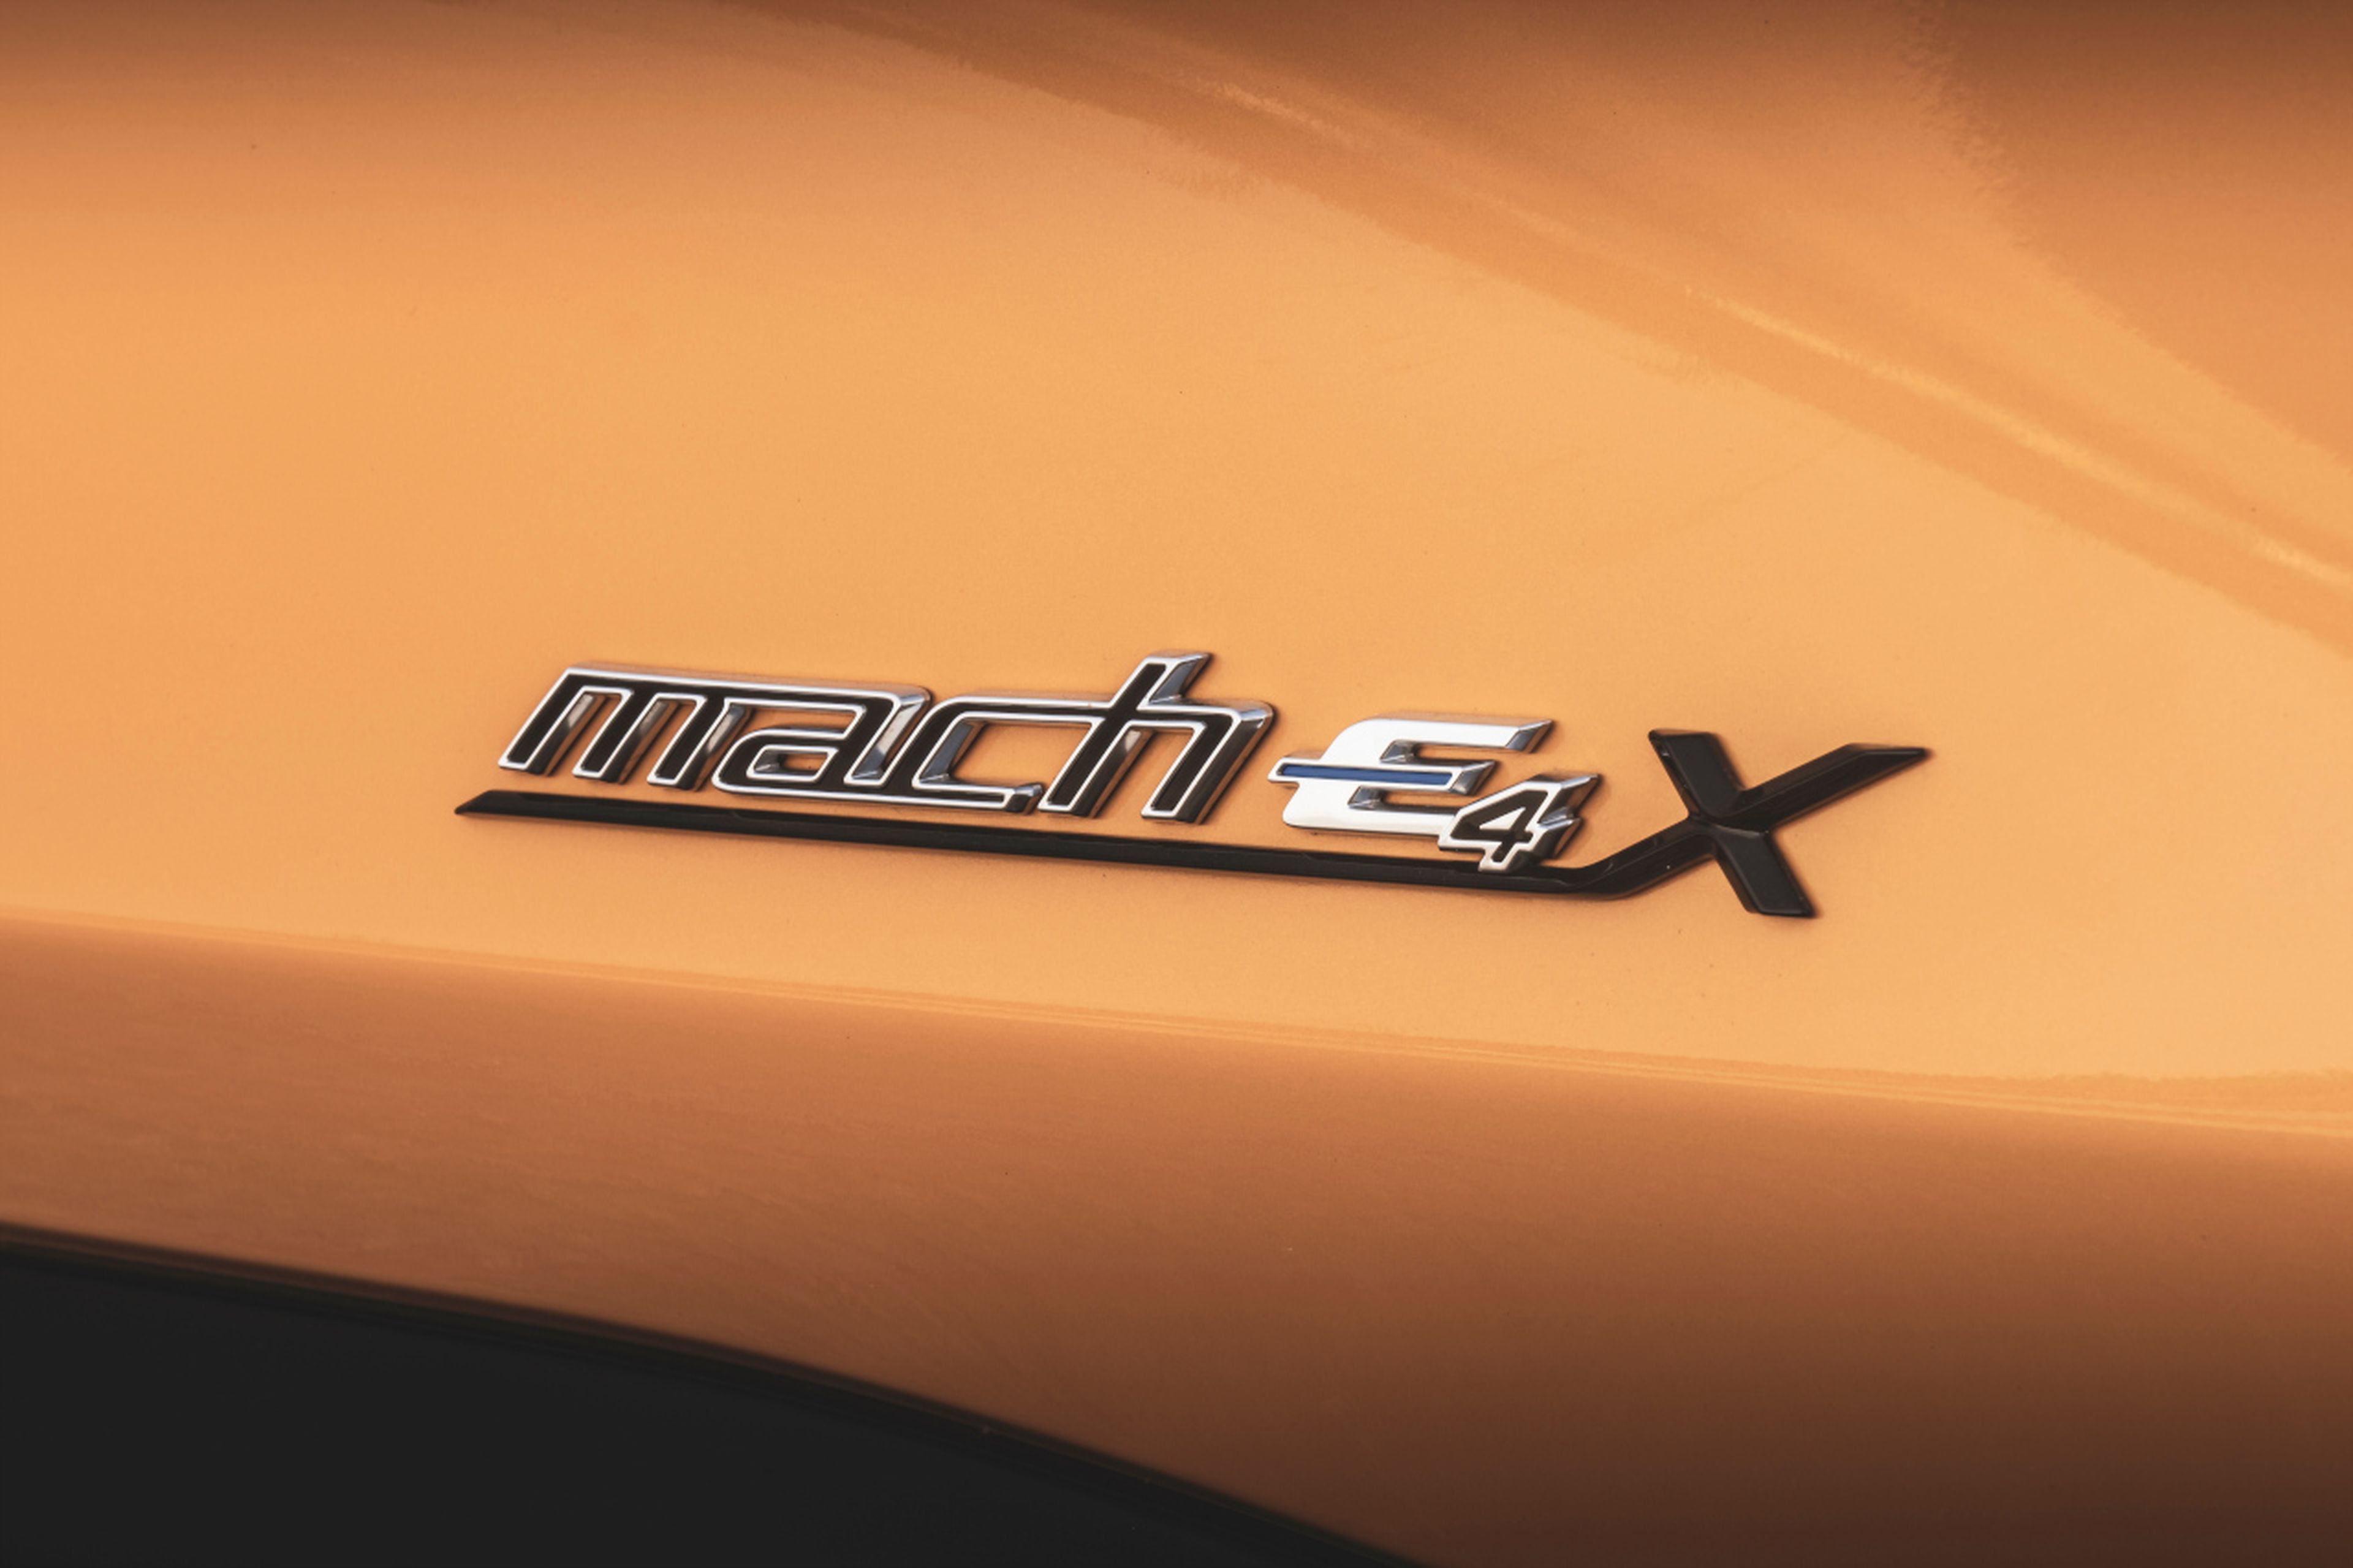 Nomenclatura del Mustang Mach-e GT que indica que este eléctrico es tracción integral y tiene autonomía extendida